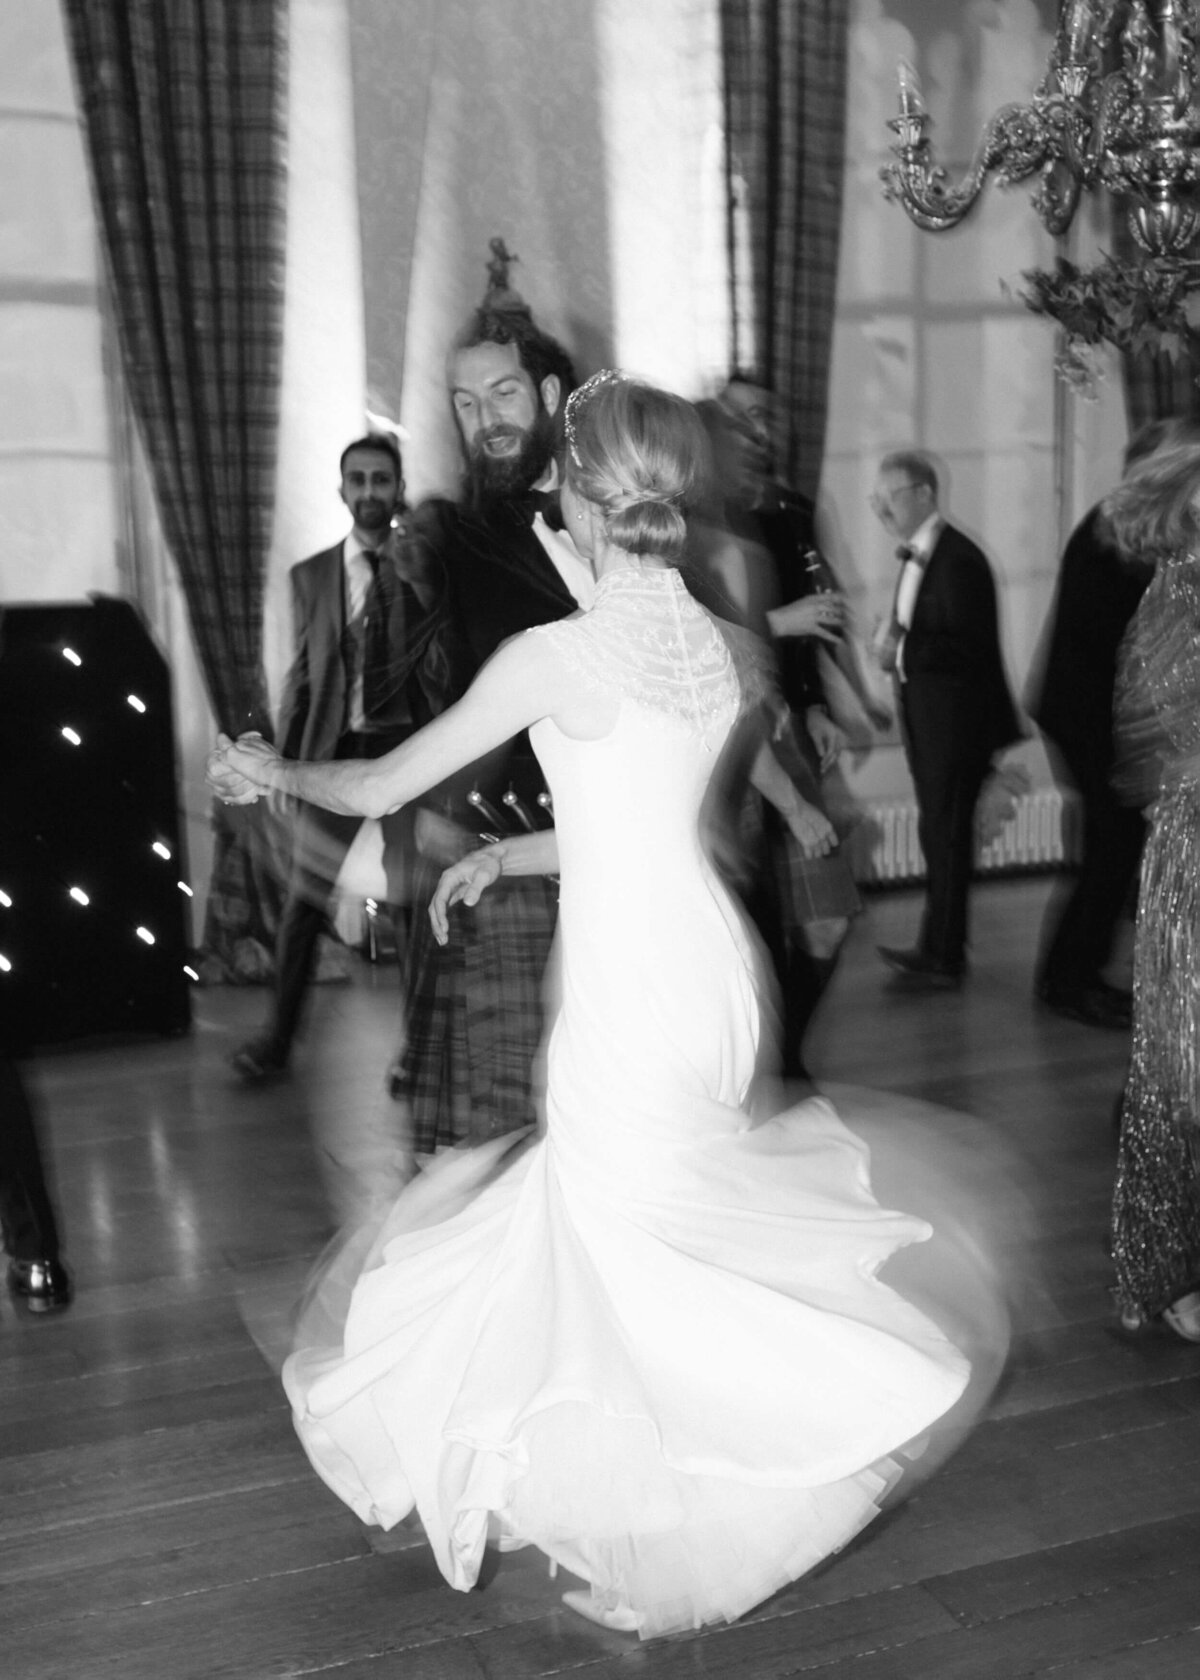 chloe-winstanley-wedding-scotland-scone-palace-bride-dancing